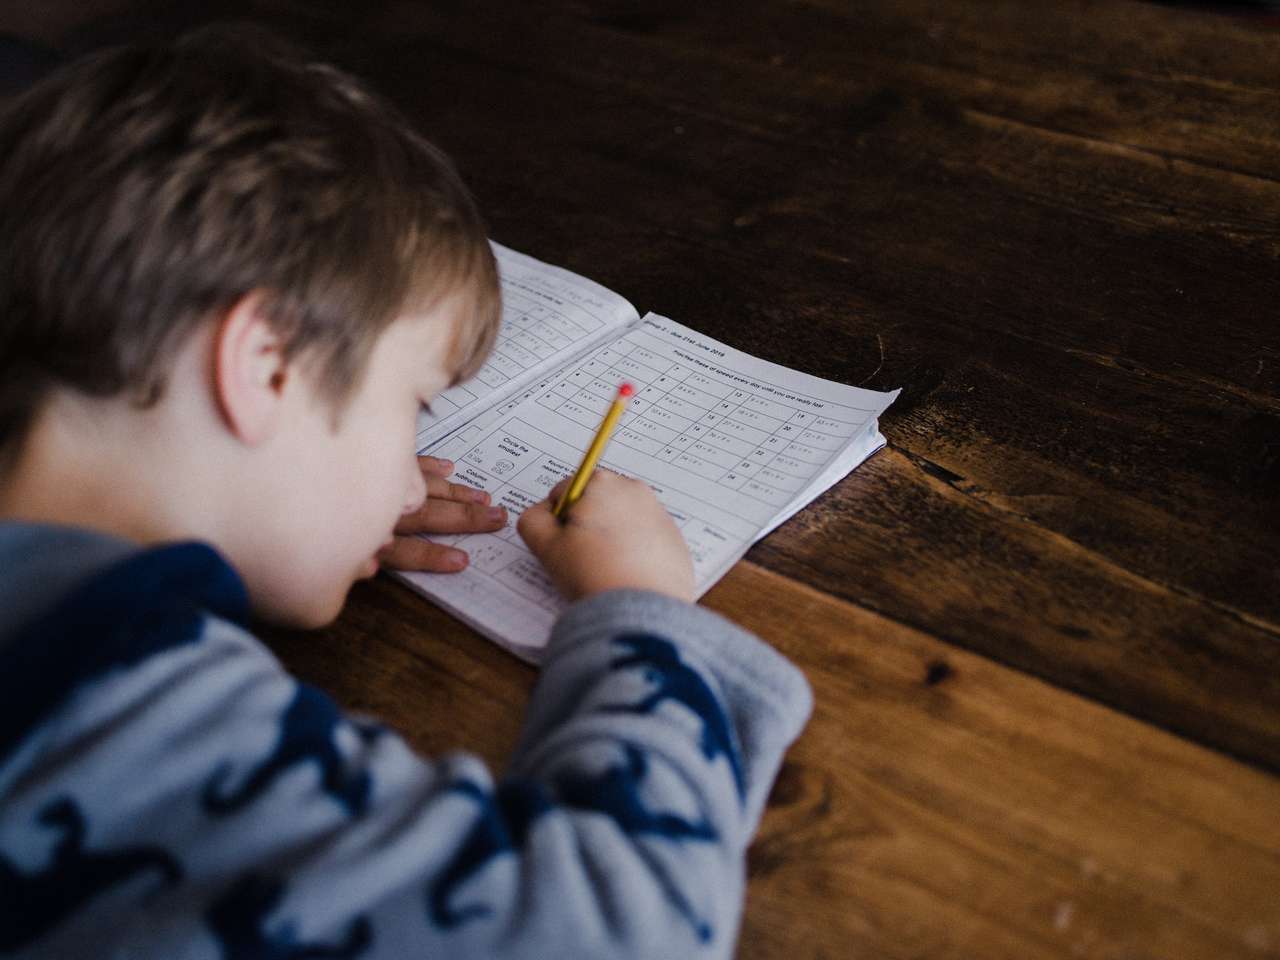 Без нервов: как научить ребенка быстро и качественно выполнять домашнее задание